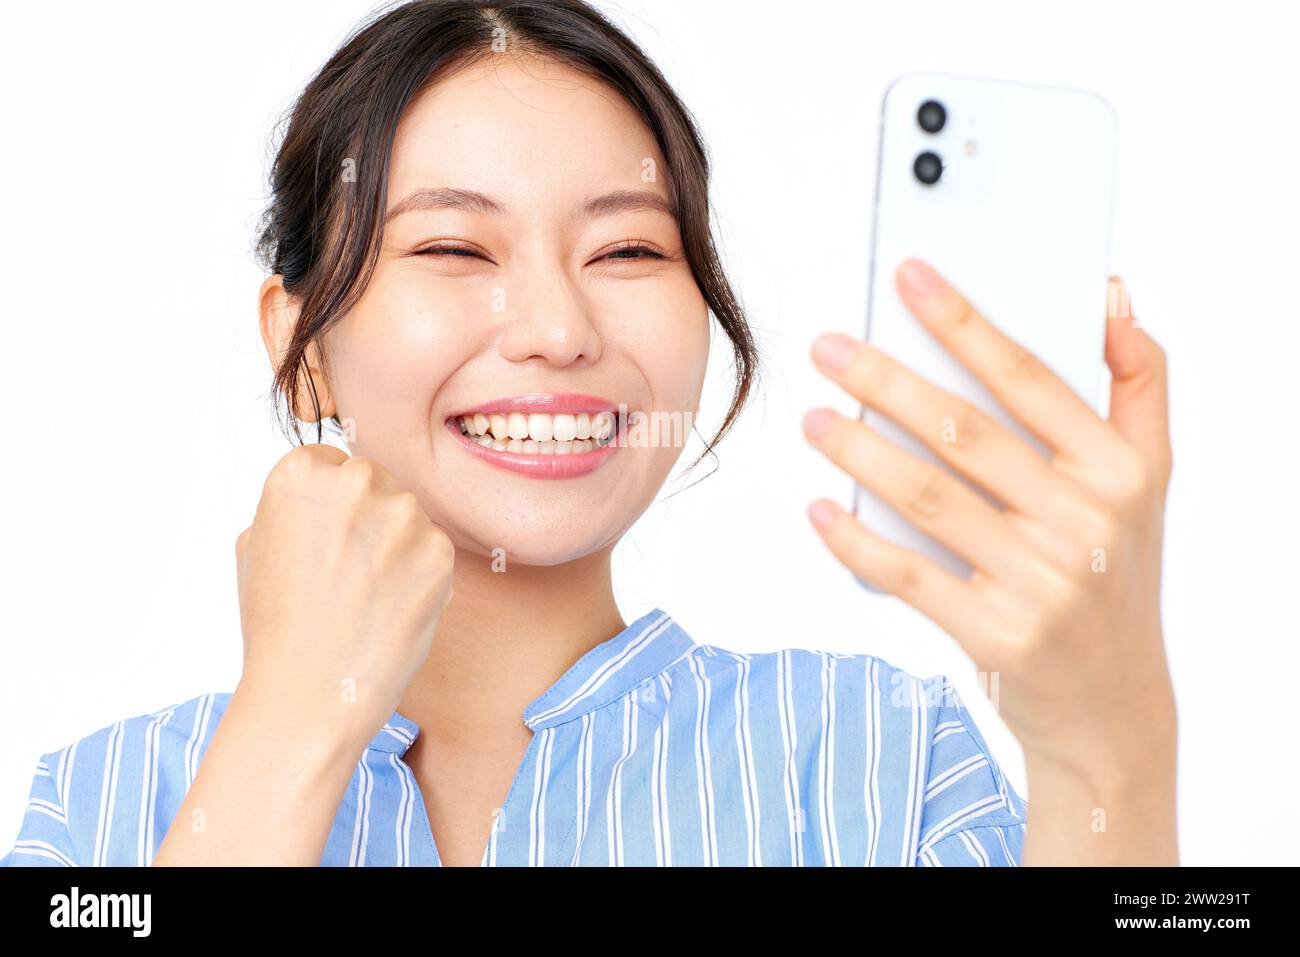 Une femme prenant un selfie avec son téléphone Banque D'Images